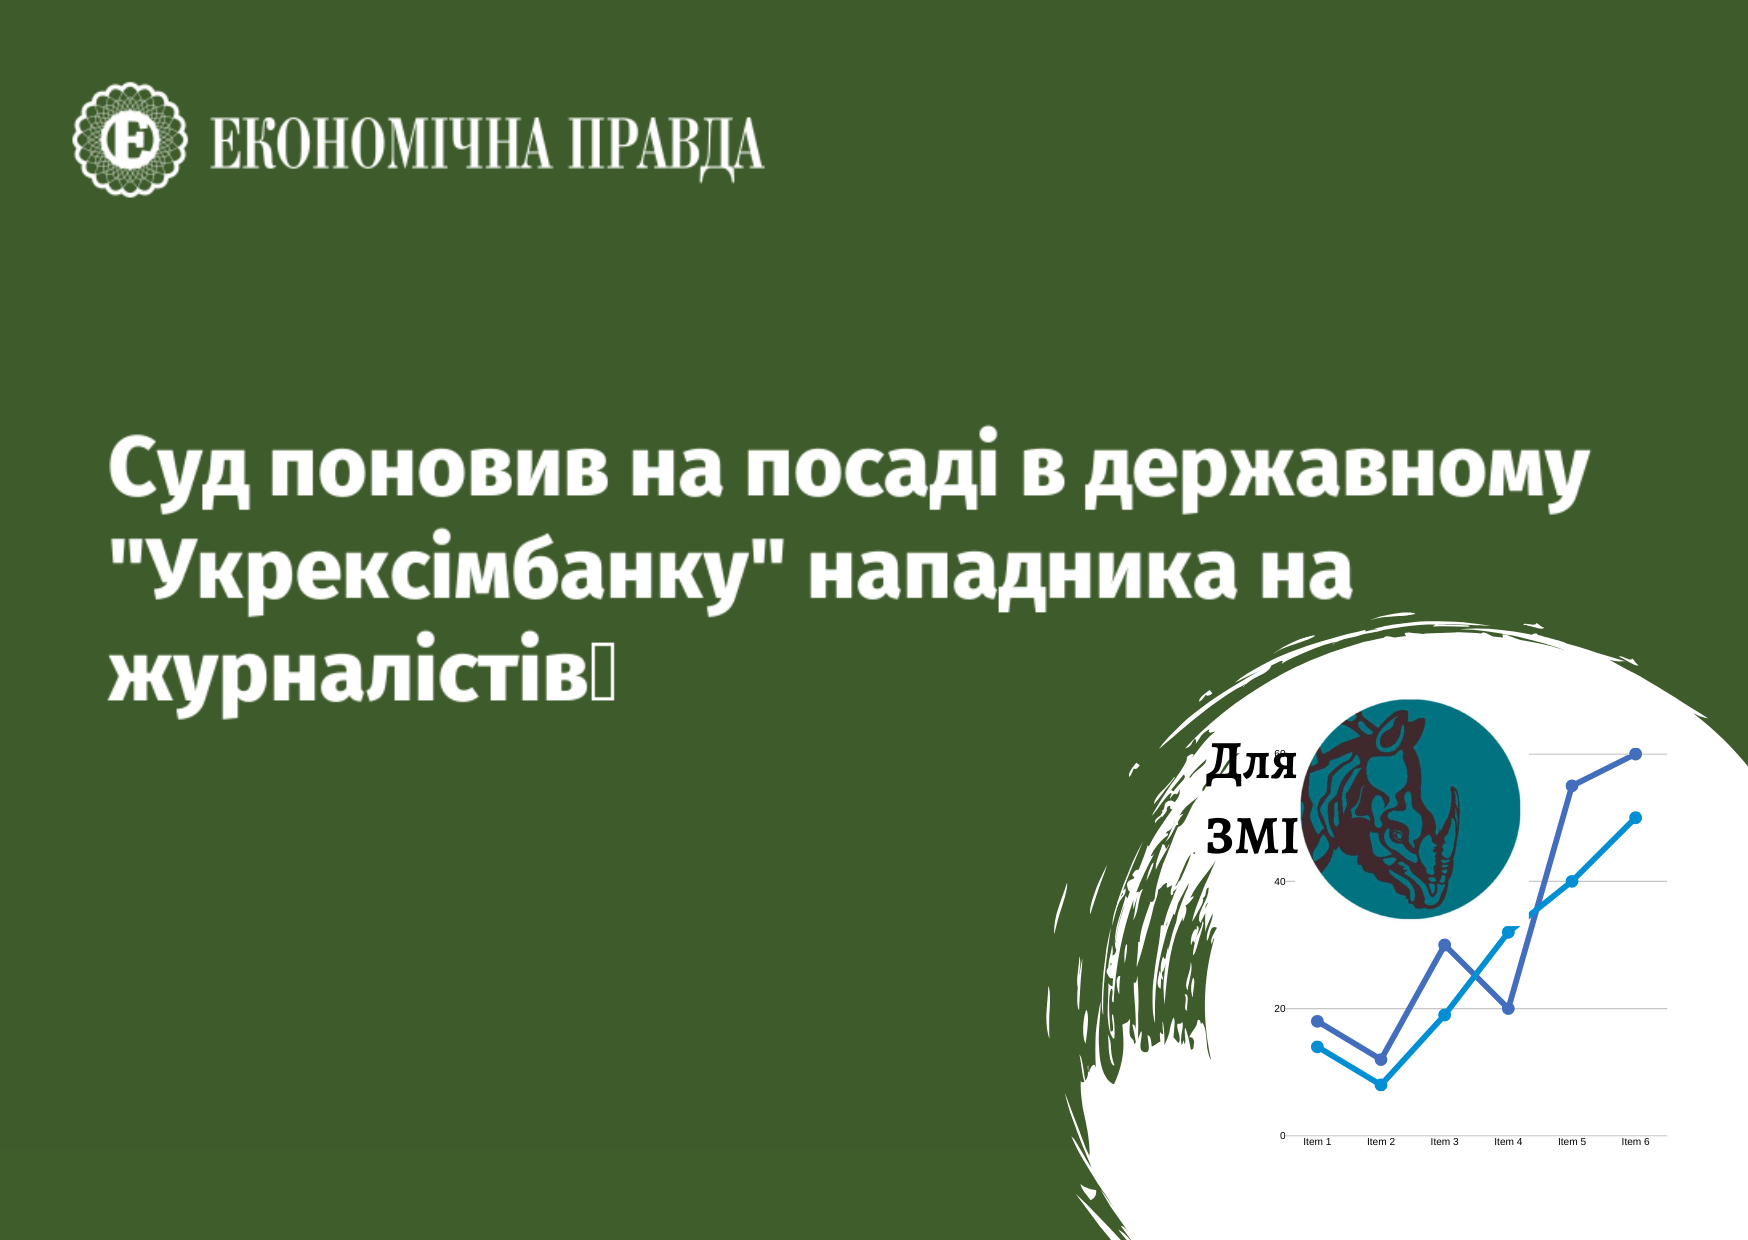 Укрэксимбанк выиграл суд по активам компании, приближенной к российскому олигарху Крупчаку – данные по рынку упаковки от Pro-Consulting. ЭКОНОМИЧЕСКАЯ ПРАВДА